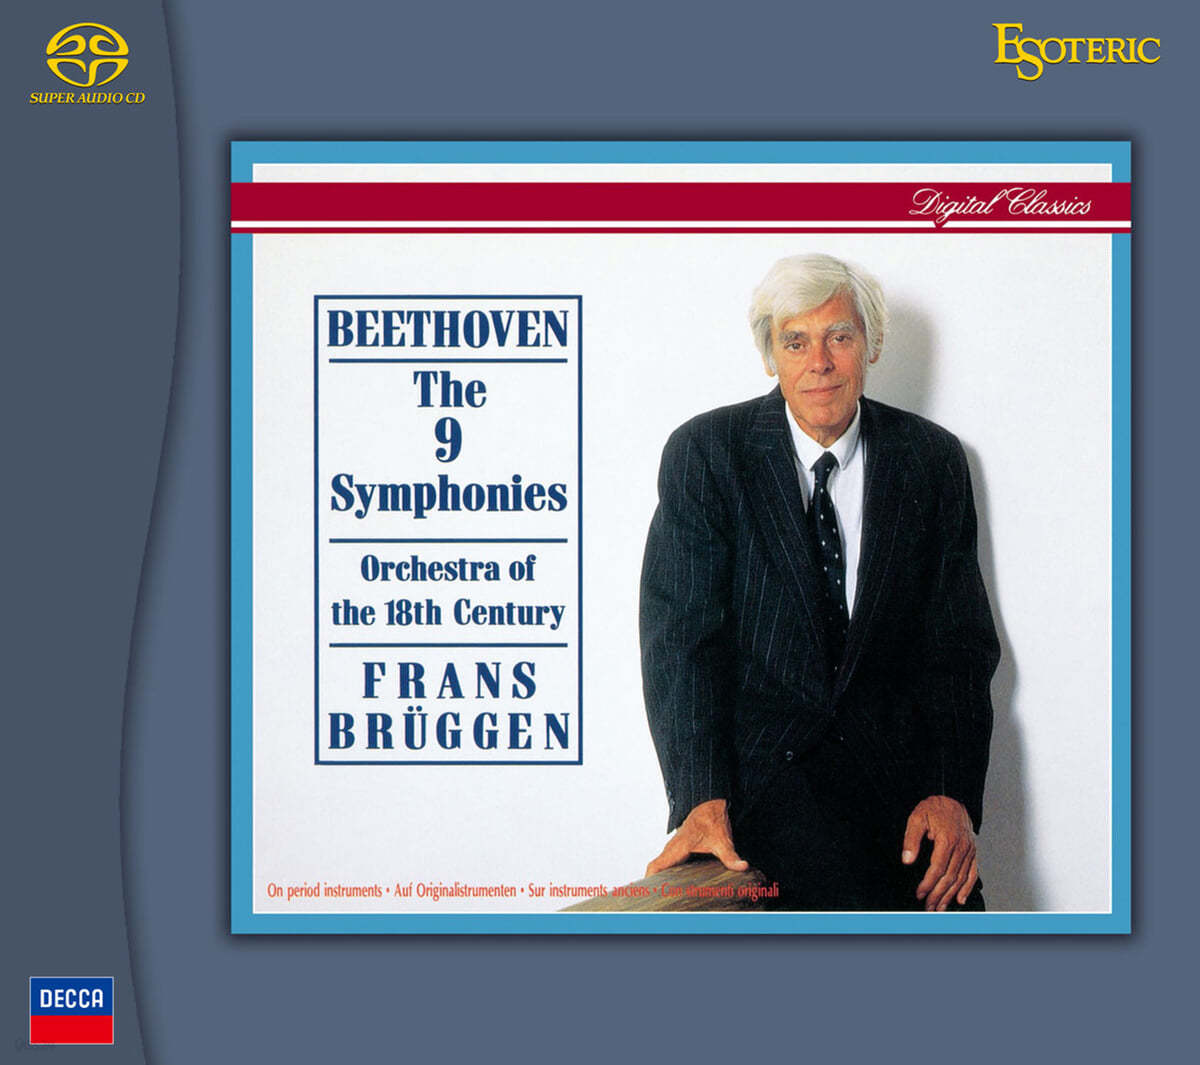 Frans Bruggen 베토벤: 교향곡 전곡 (Beethoven The 9 Symphonies)